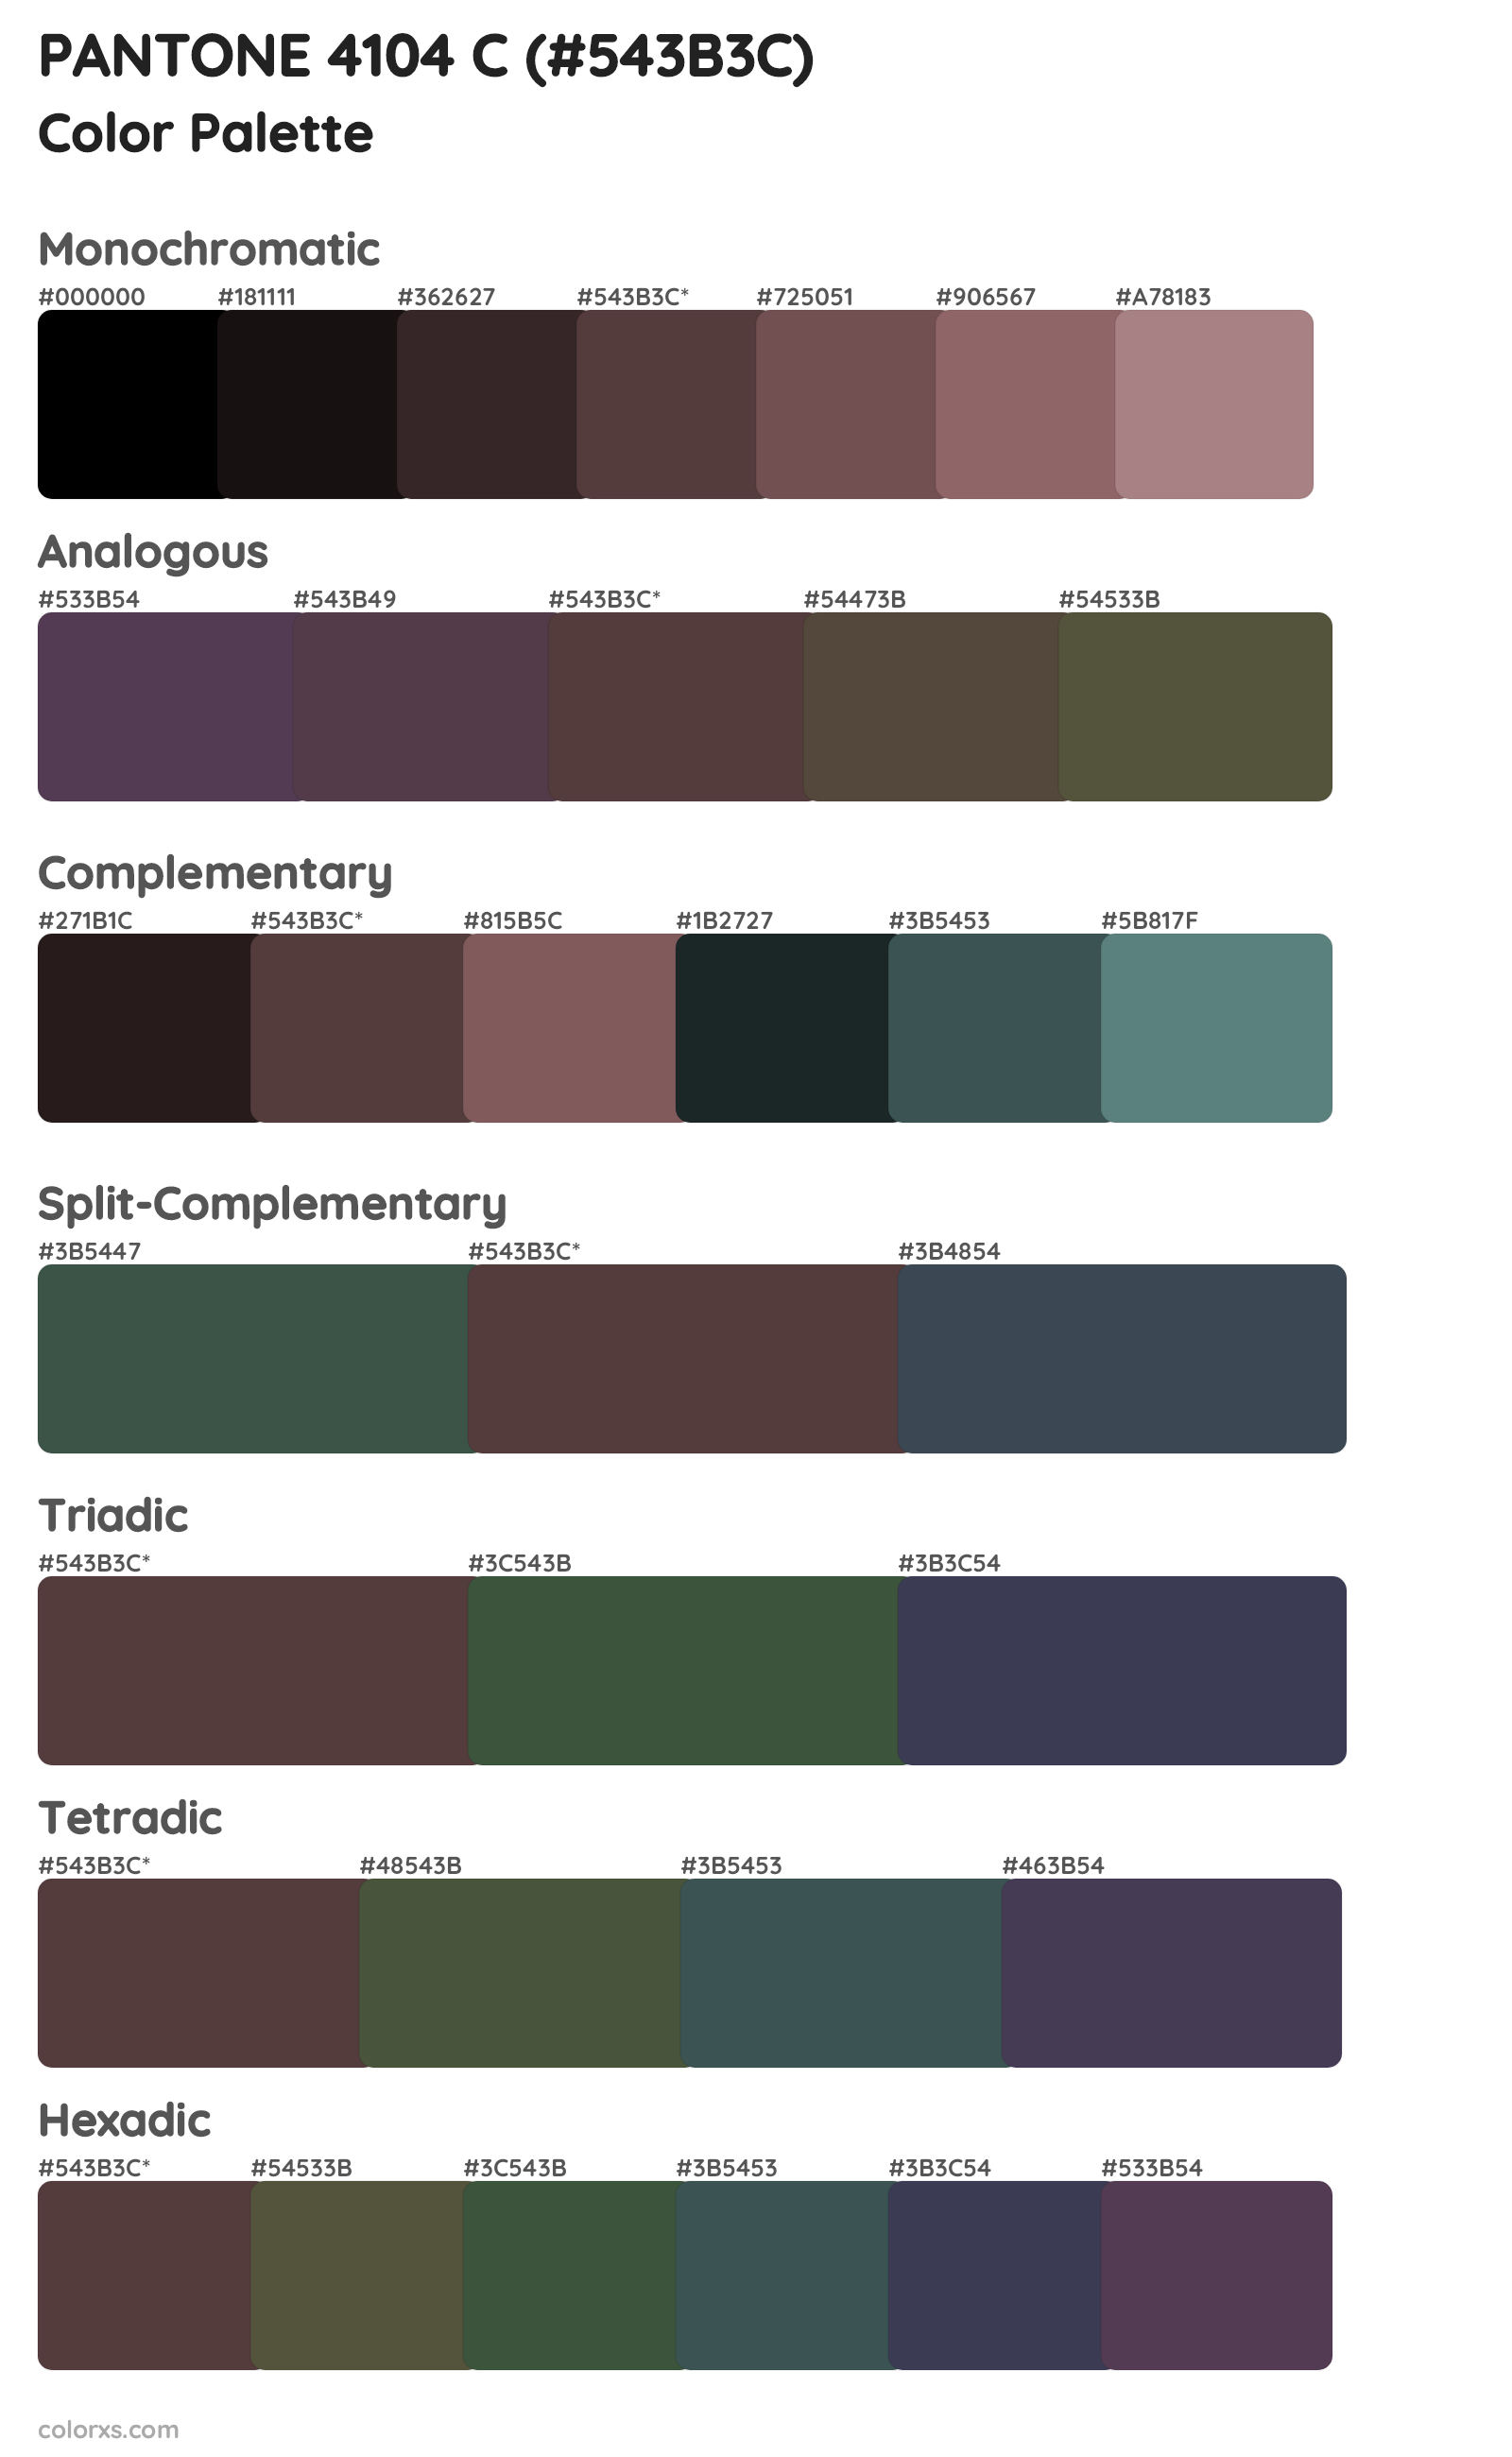 PANTONE 4104 C Color Scheme Palettes